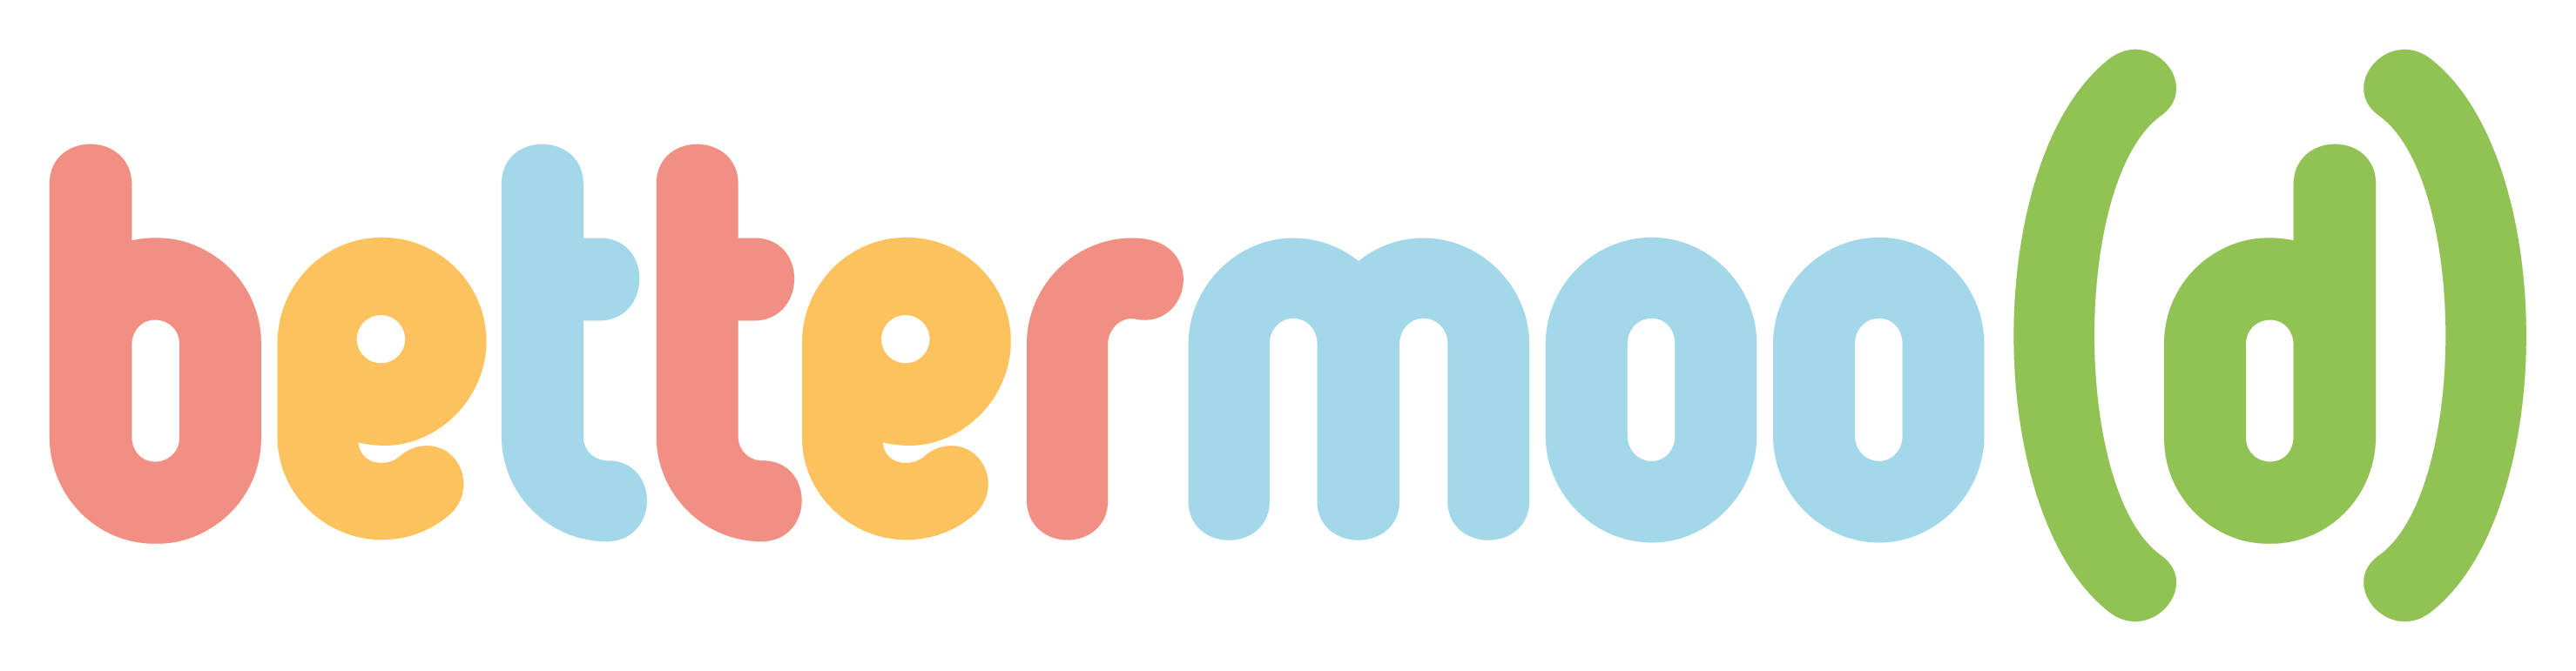 bettermoo(d)-branding-outline